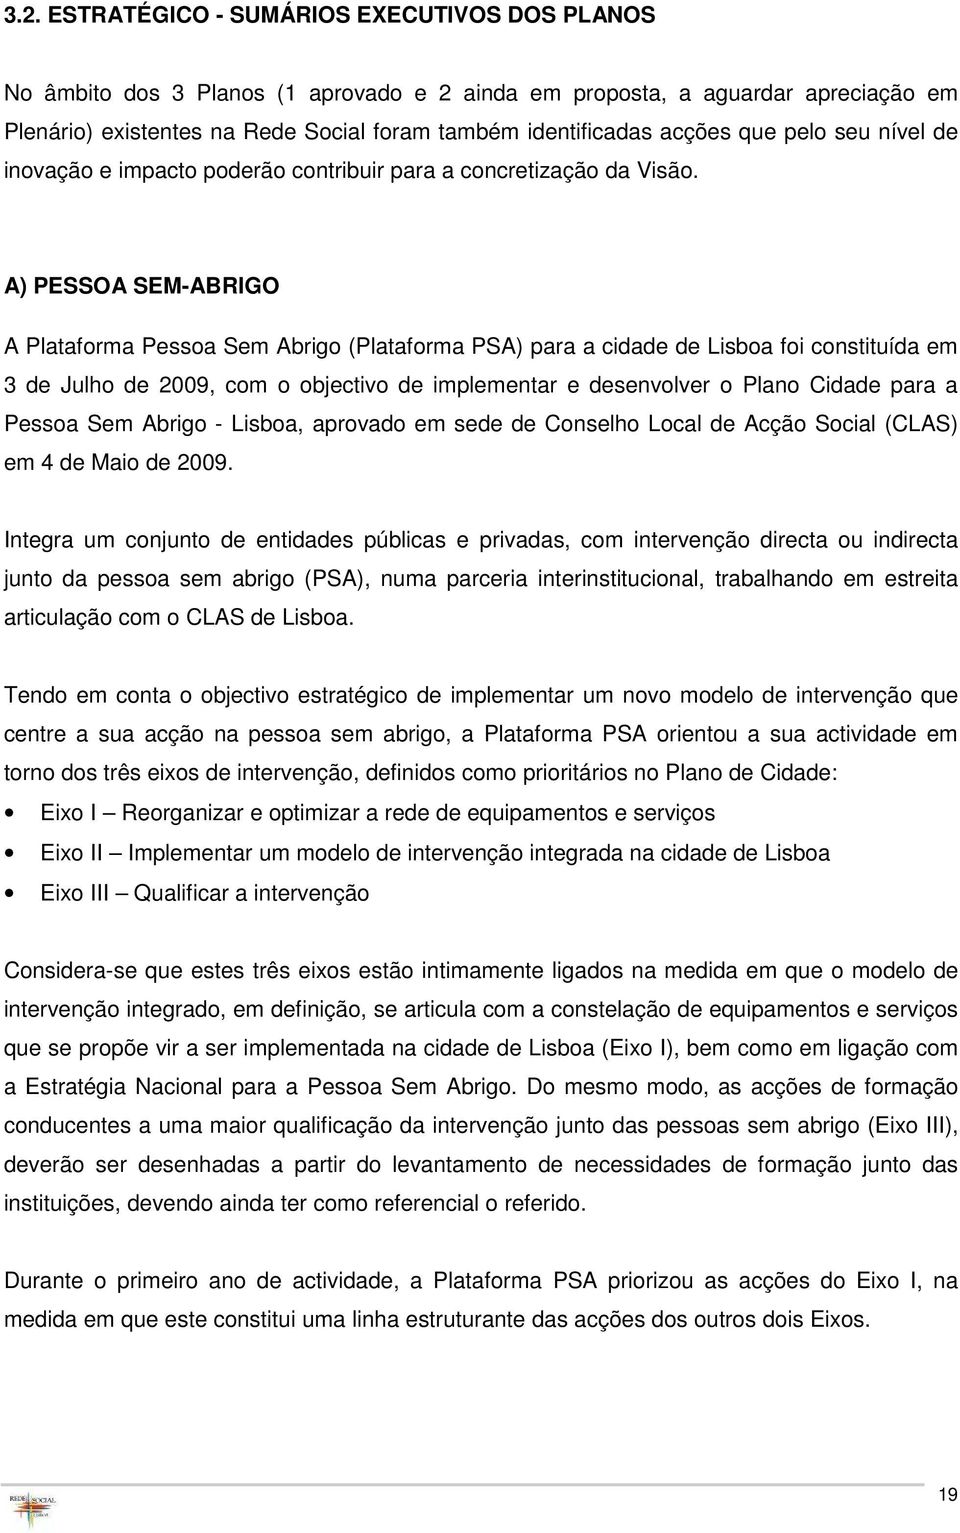 A) PESSOA SEM-ABRIGO A Plataforma Pessoa Sem Abrigo (Plataforma PSA) para a cidade de Lisboa foi constituída em 3 de Julho de 2009, com o objectivo de implementar e desenvolver o Plano Cidade para a